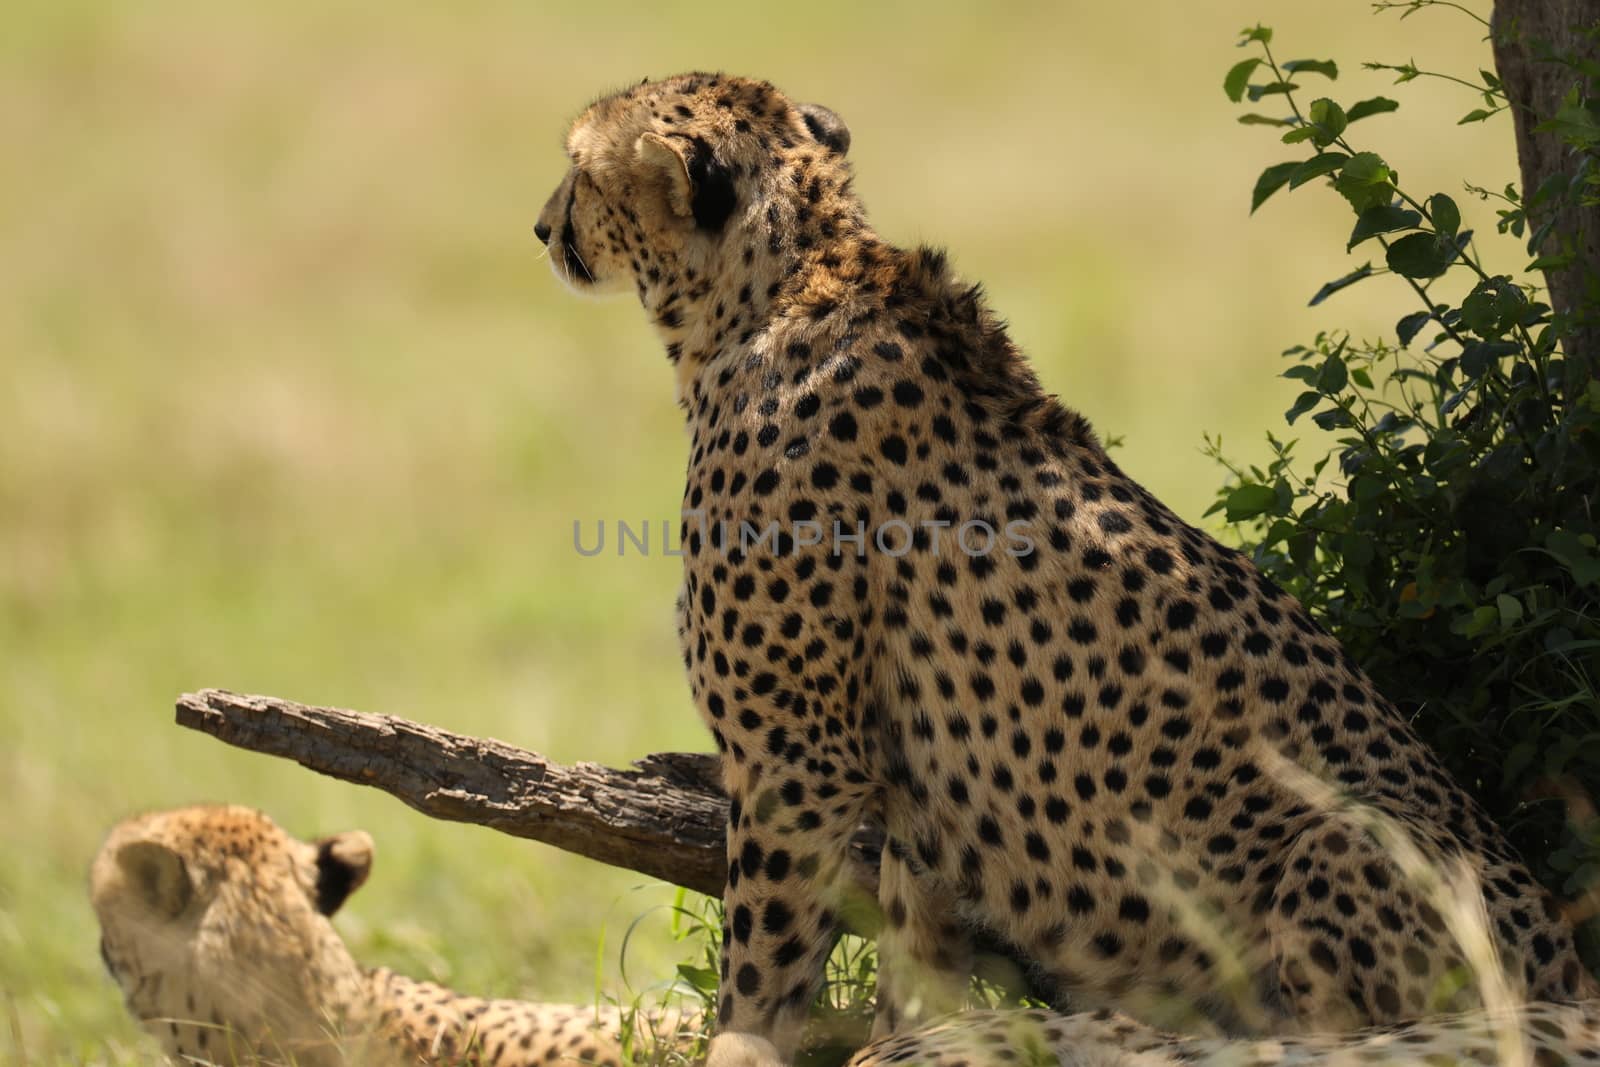 Cheetah In Grass by rajastills